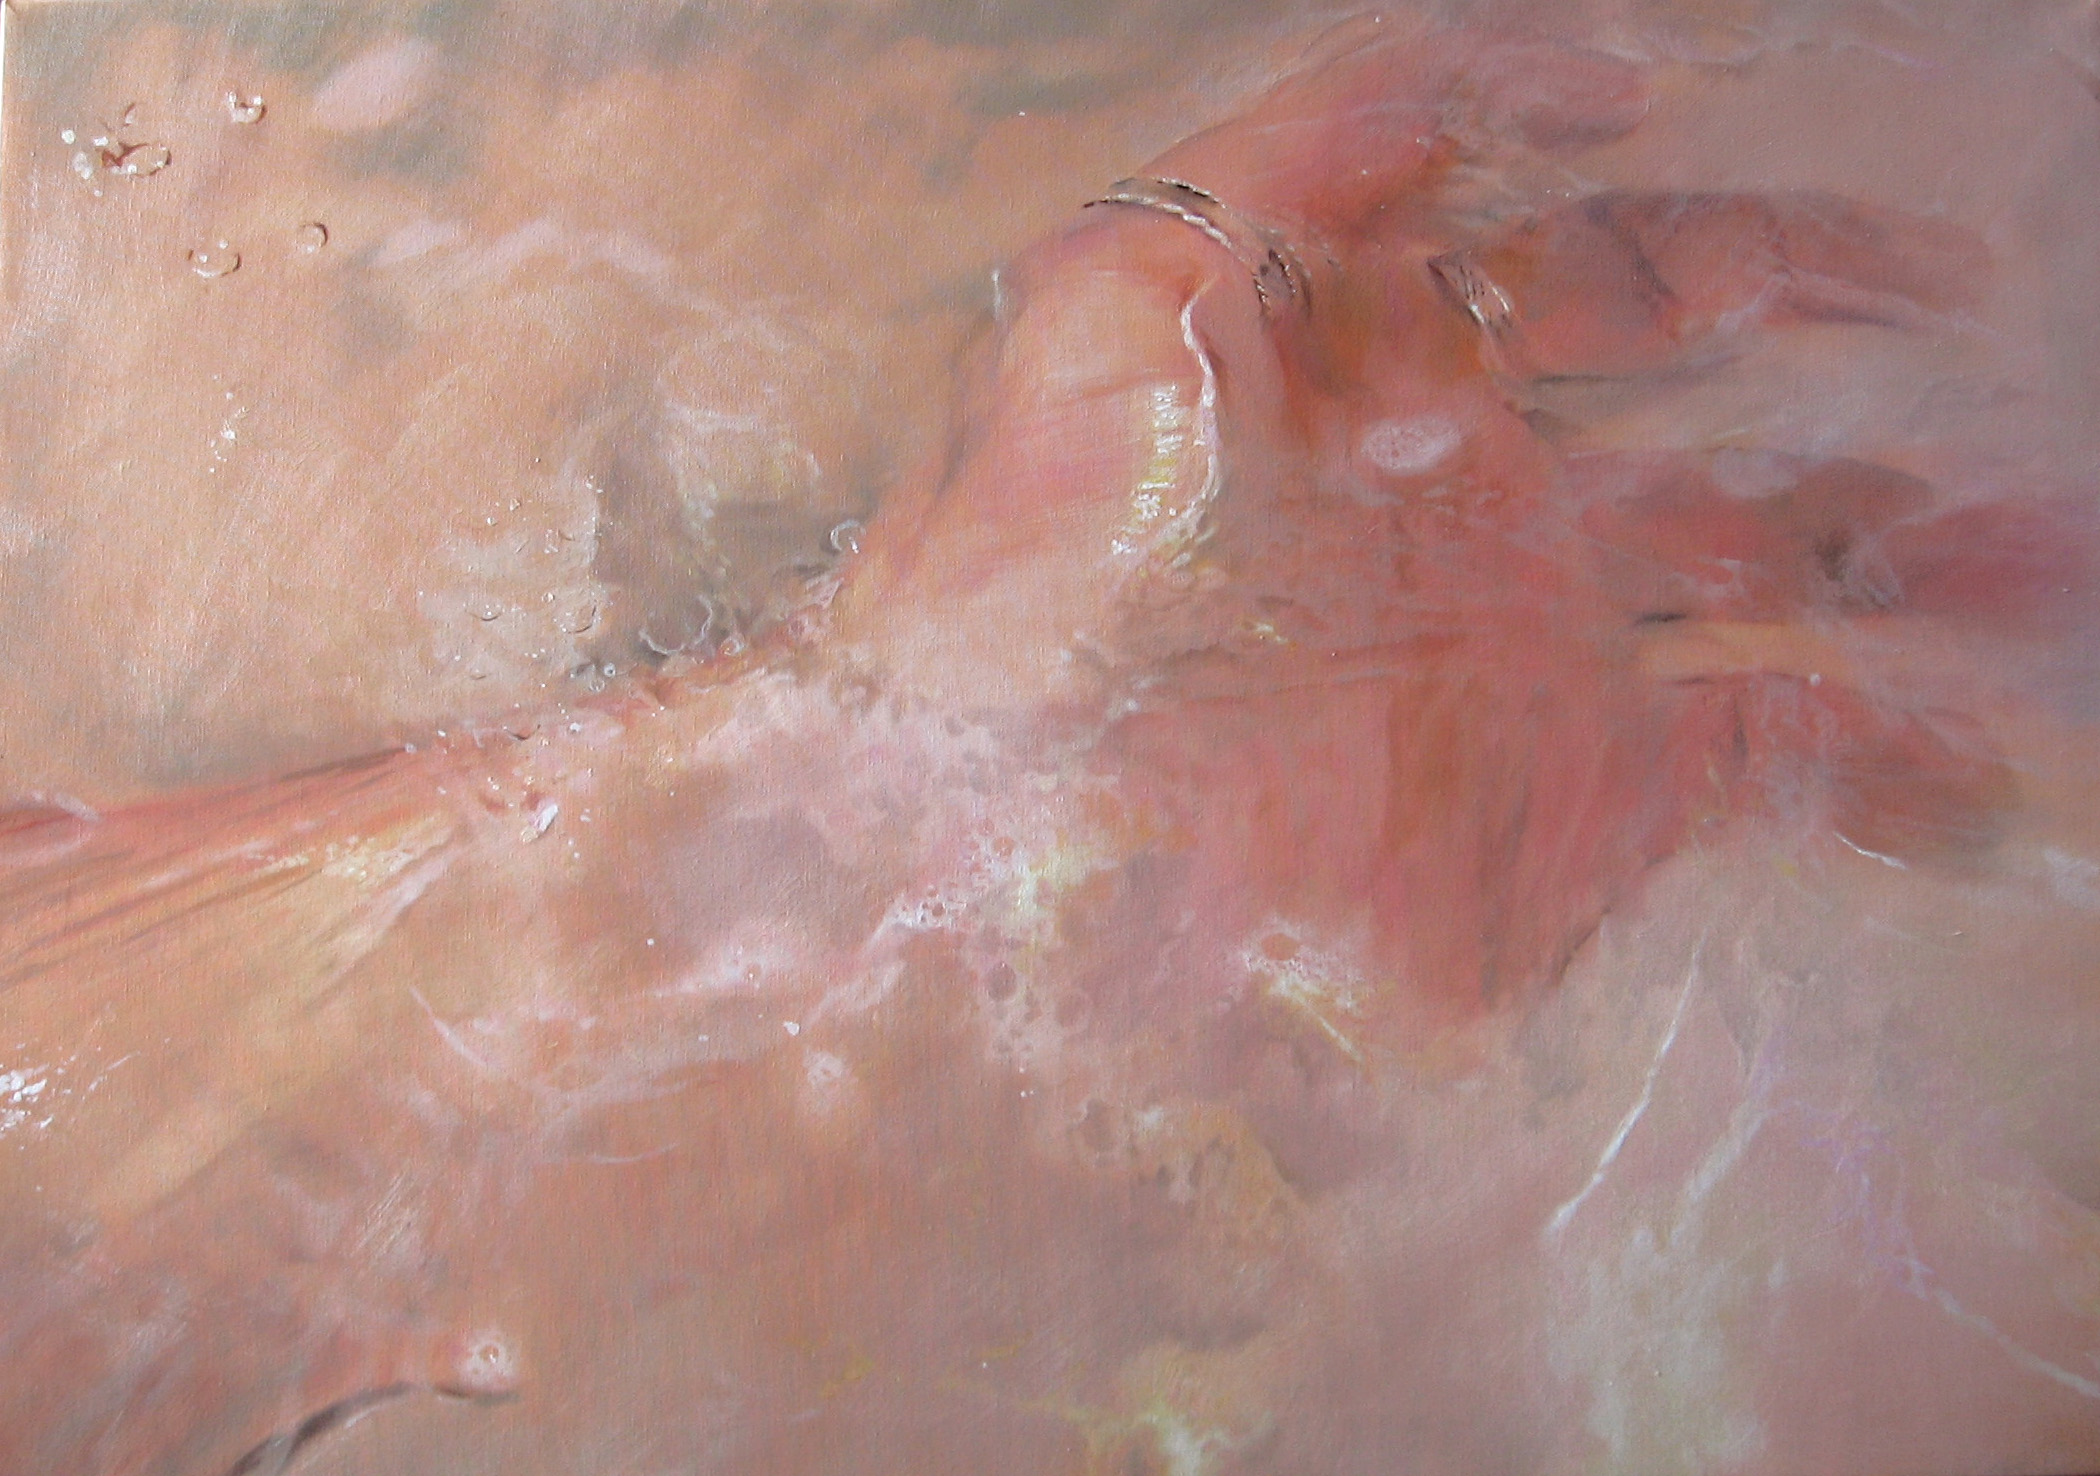 
'Amputazione del gesto' 
(2008), 
oil on canvas, 
70x100 cm.
Private collection
